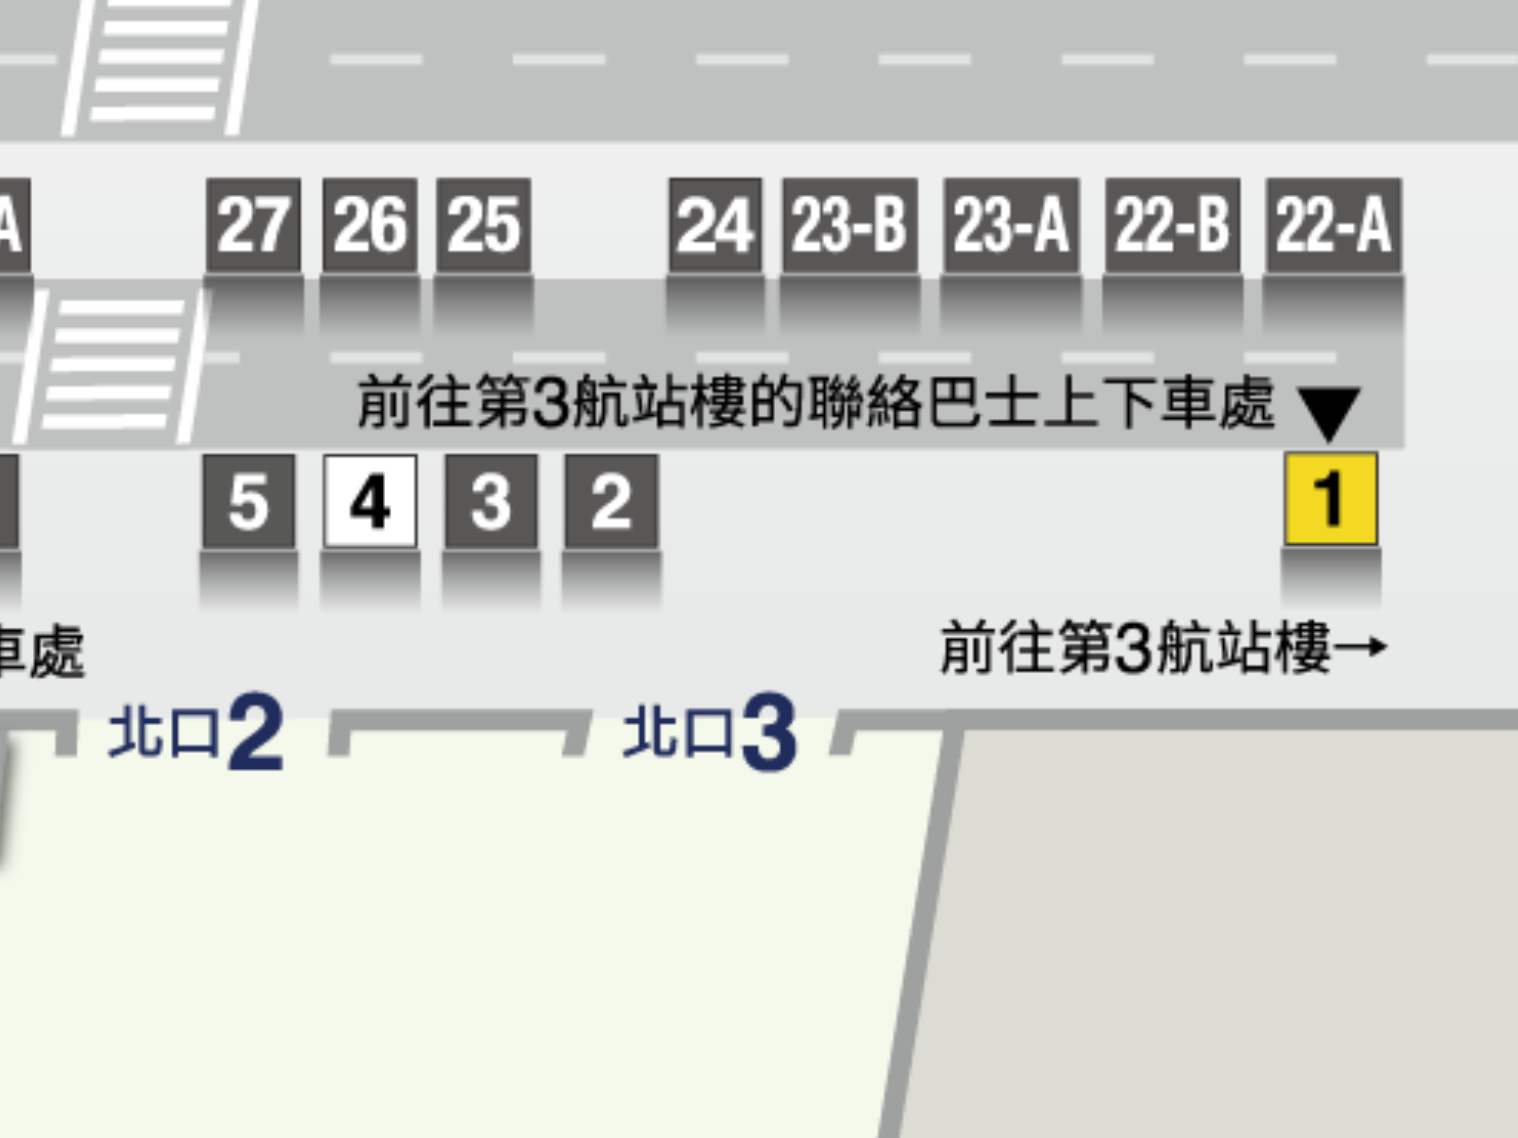 第2航站樓 聯絡巴士上下車站指南圖